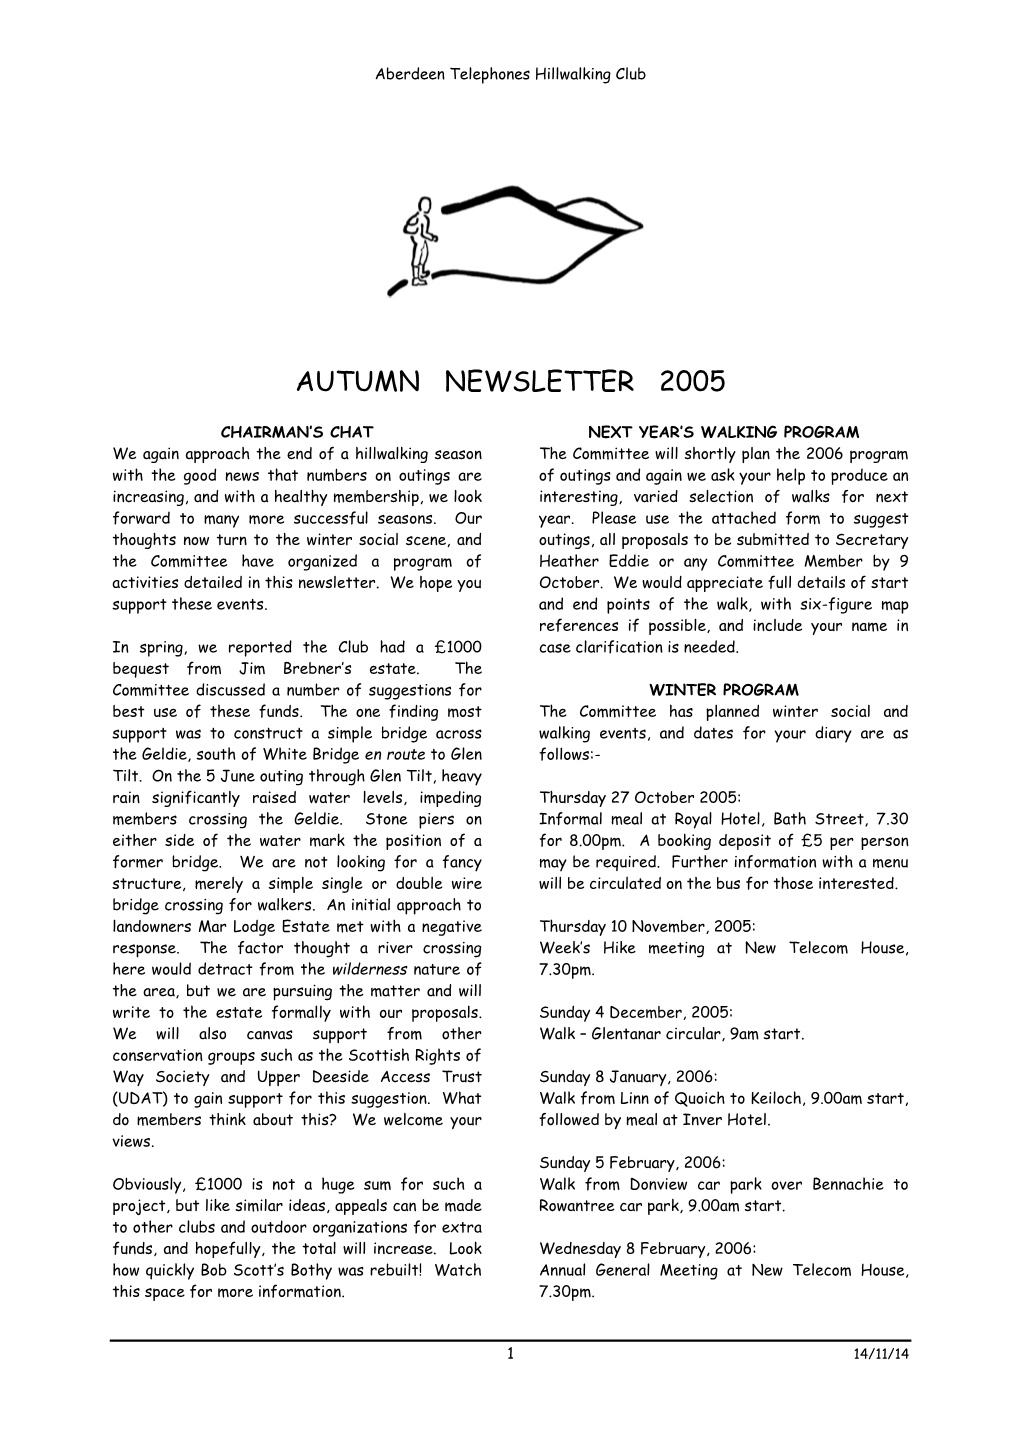 Autumn Newsletter 2005